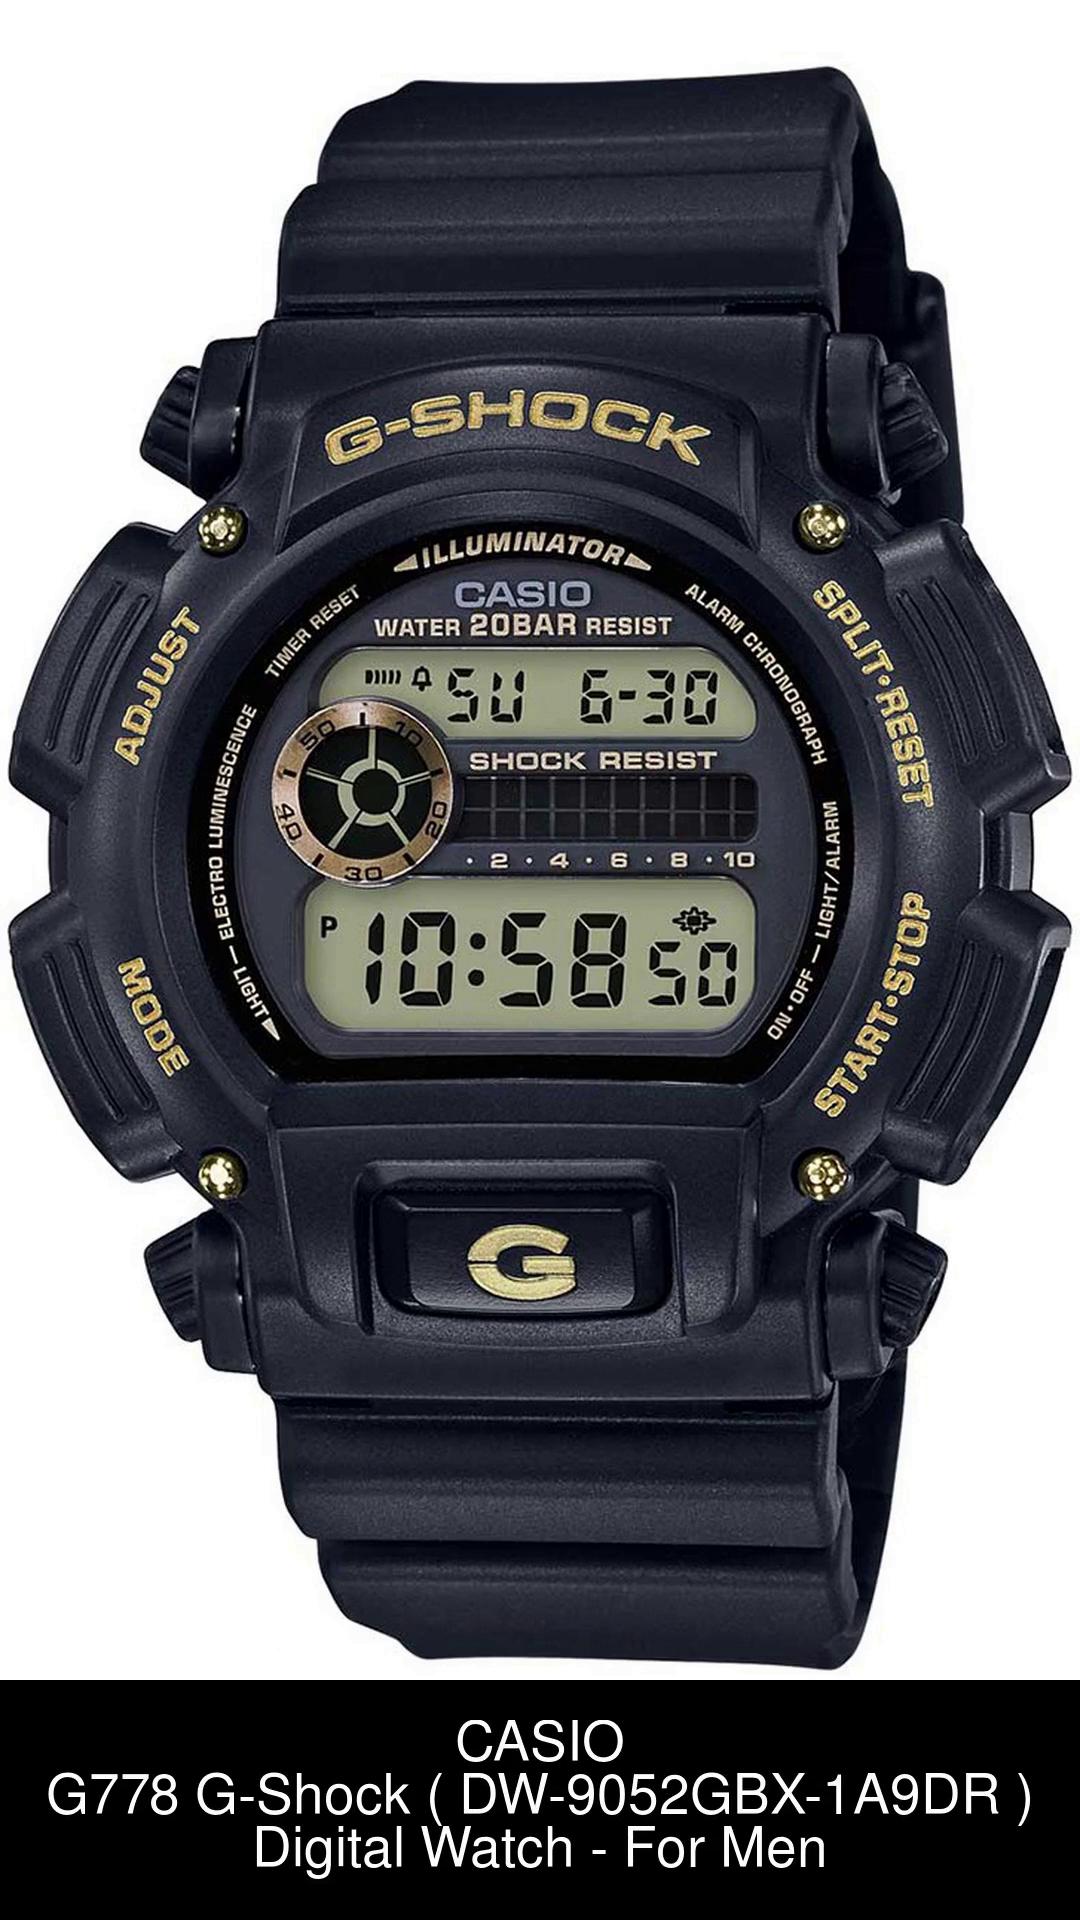 CASIO W-96H-1AVDF Youth Digital ( W-96H-1AVDF ) Digital Watch - For Men -  Buy CASIO W-96H-1AVDF Youth Digital ( W-96H-1AVDF ) Digital Watch - For Men  D031 Online at Best Prices in